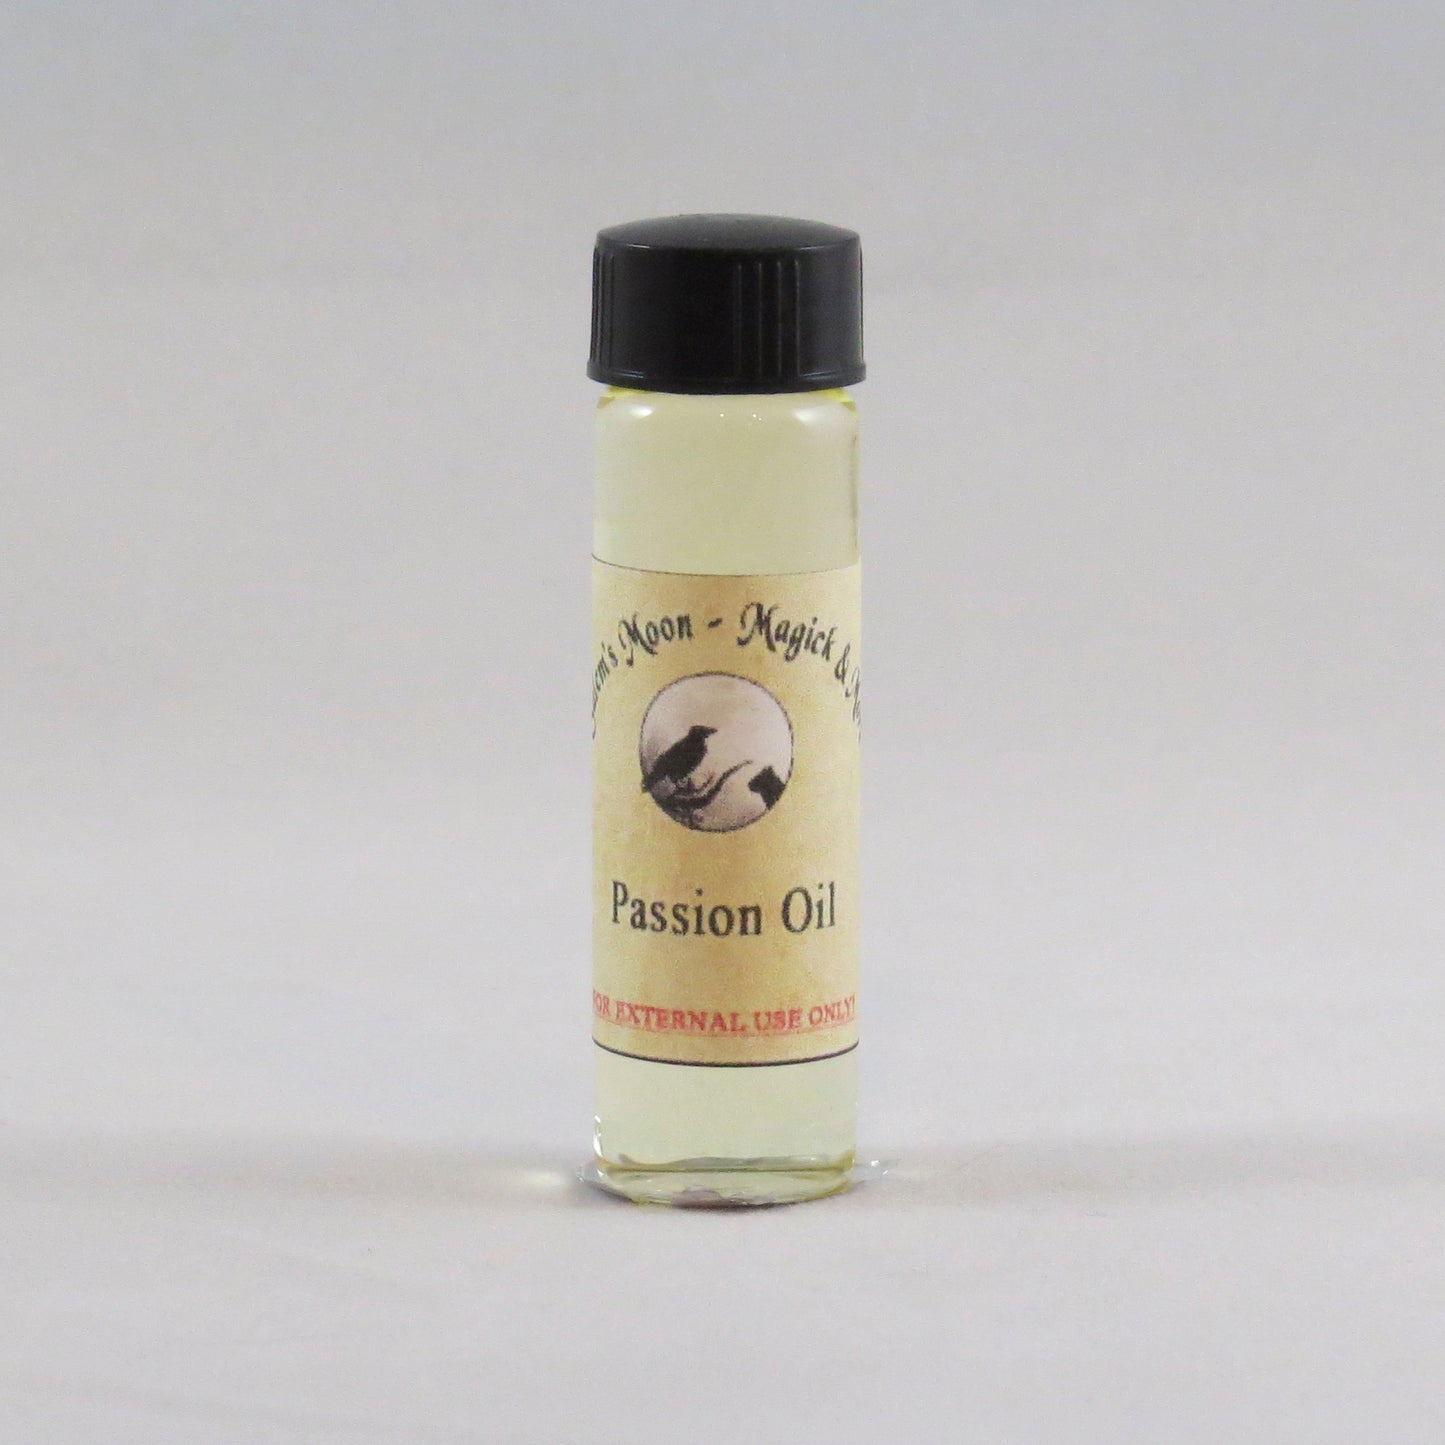 Passion Oil